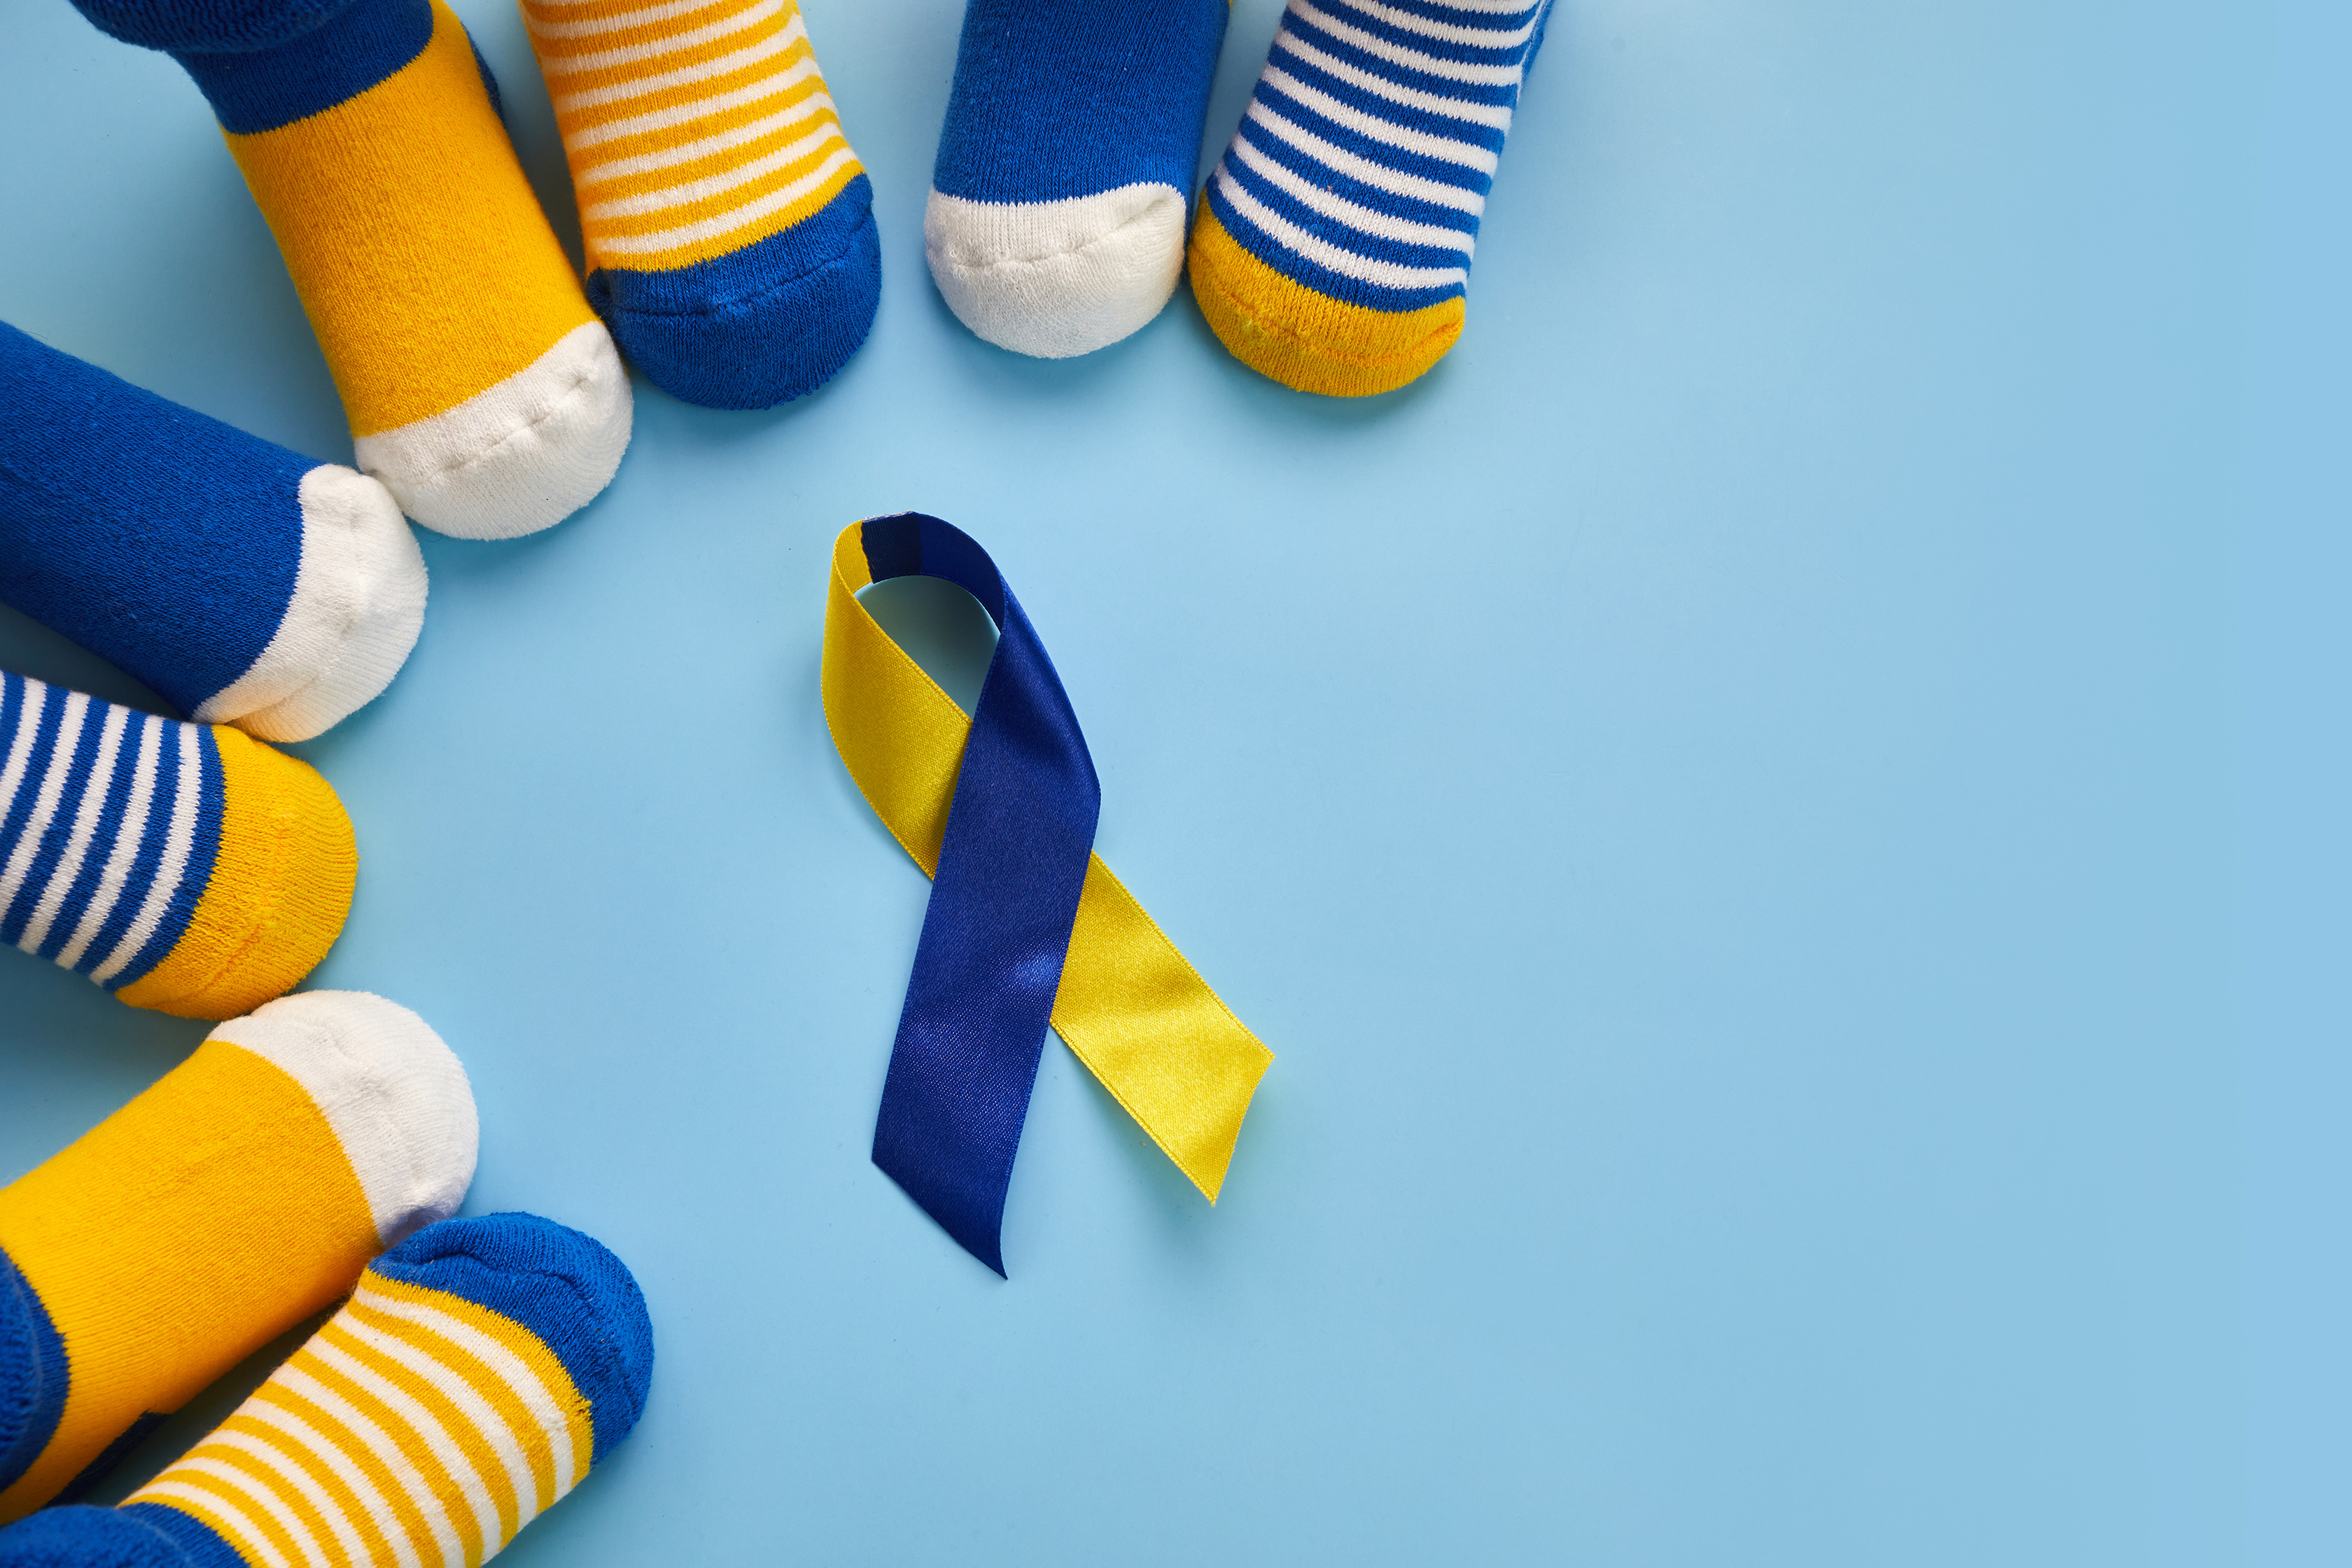 vestir calcetines de diferente color es un símbolo de apoyo a las personas con síndrome Down